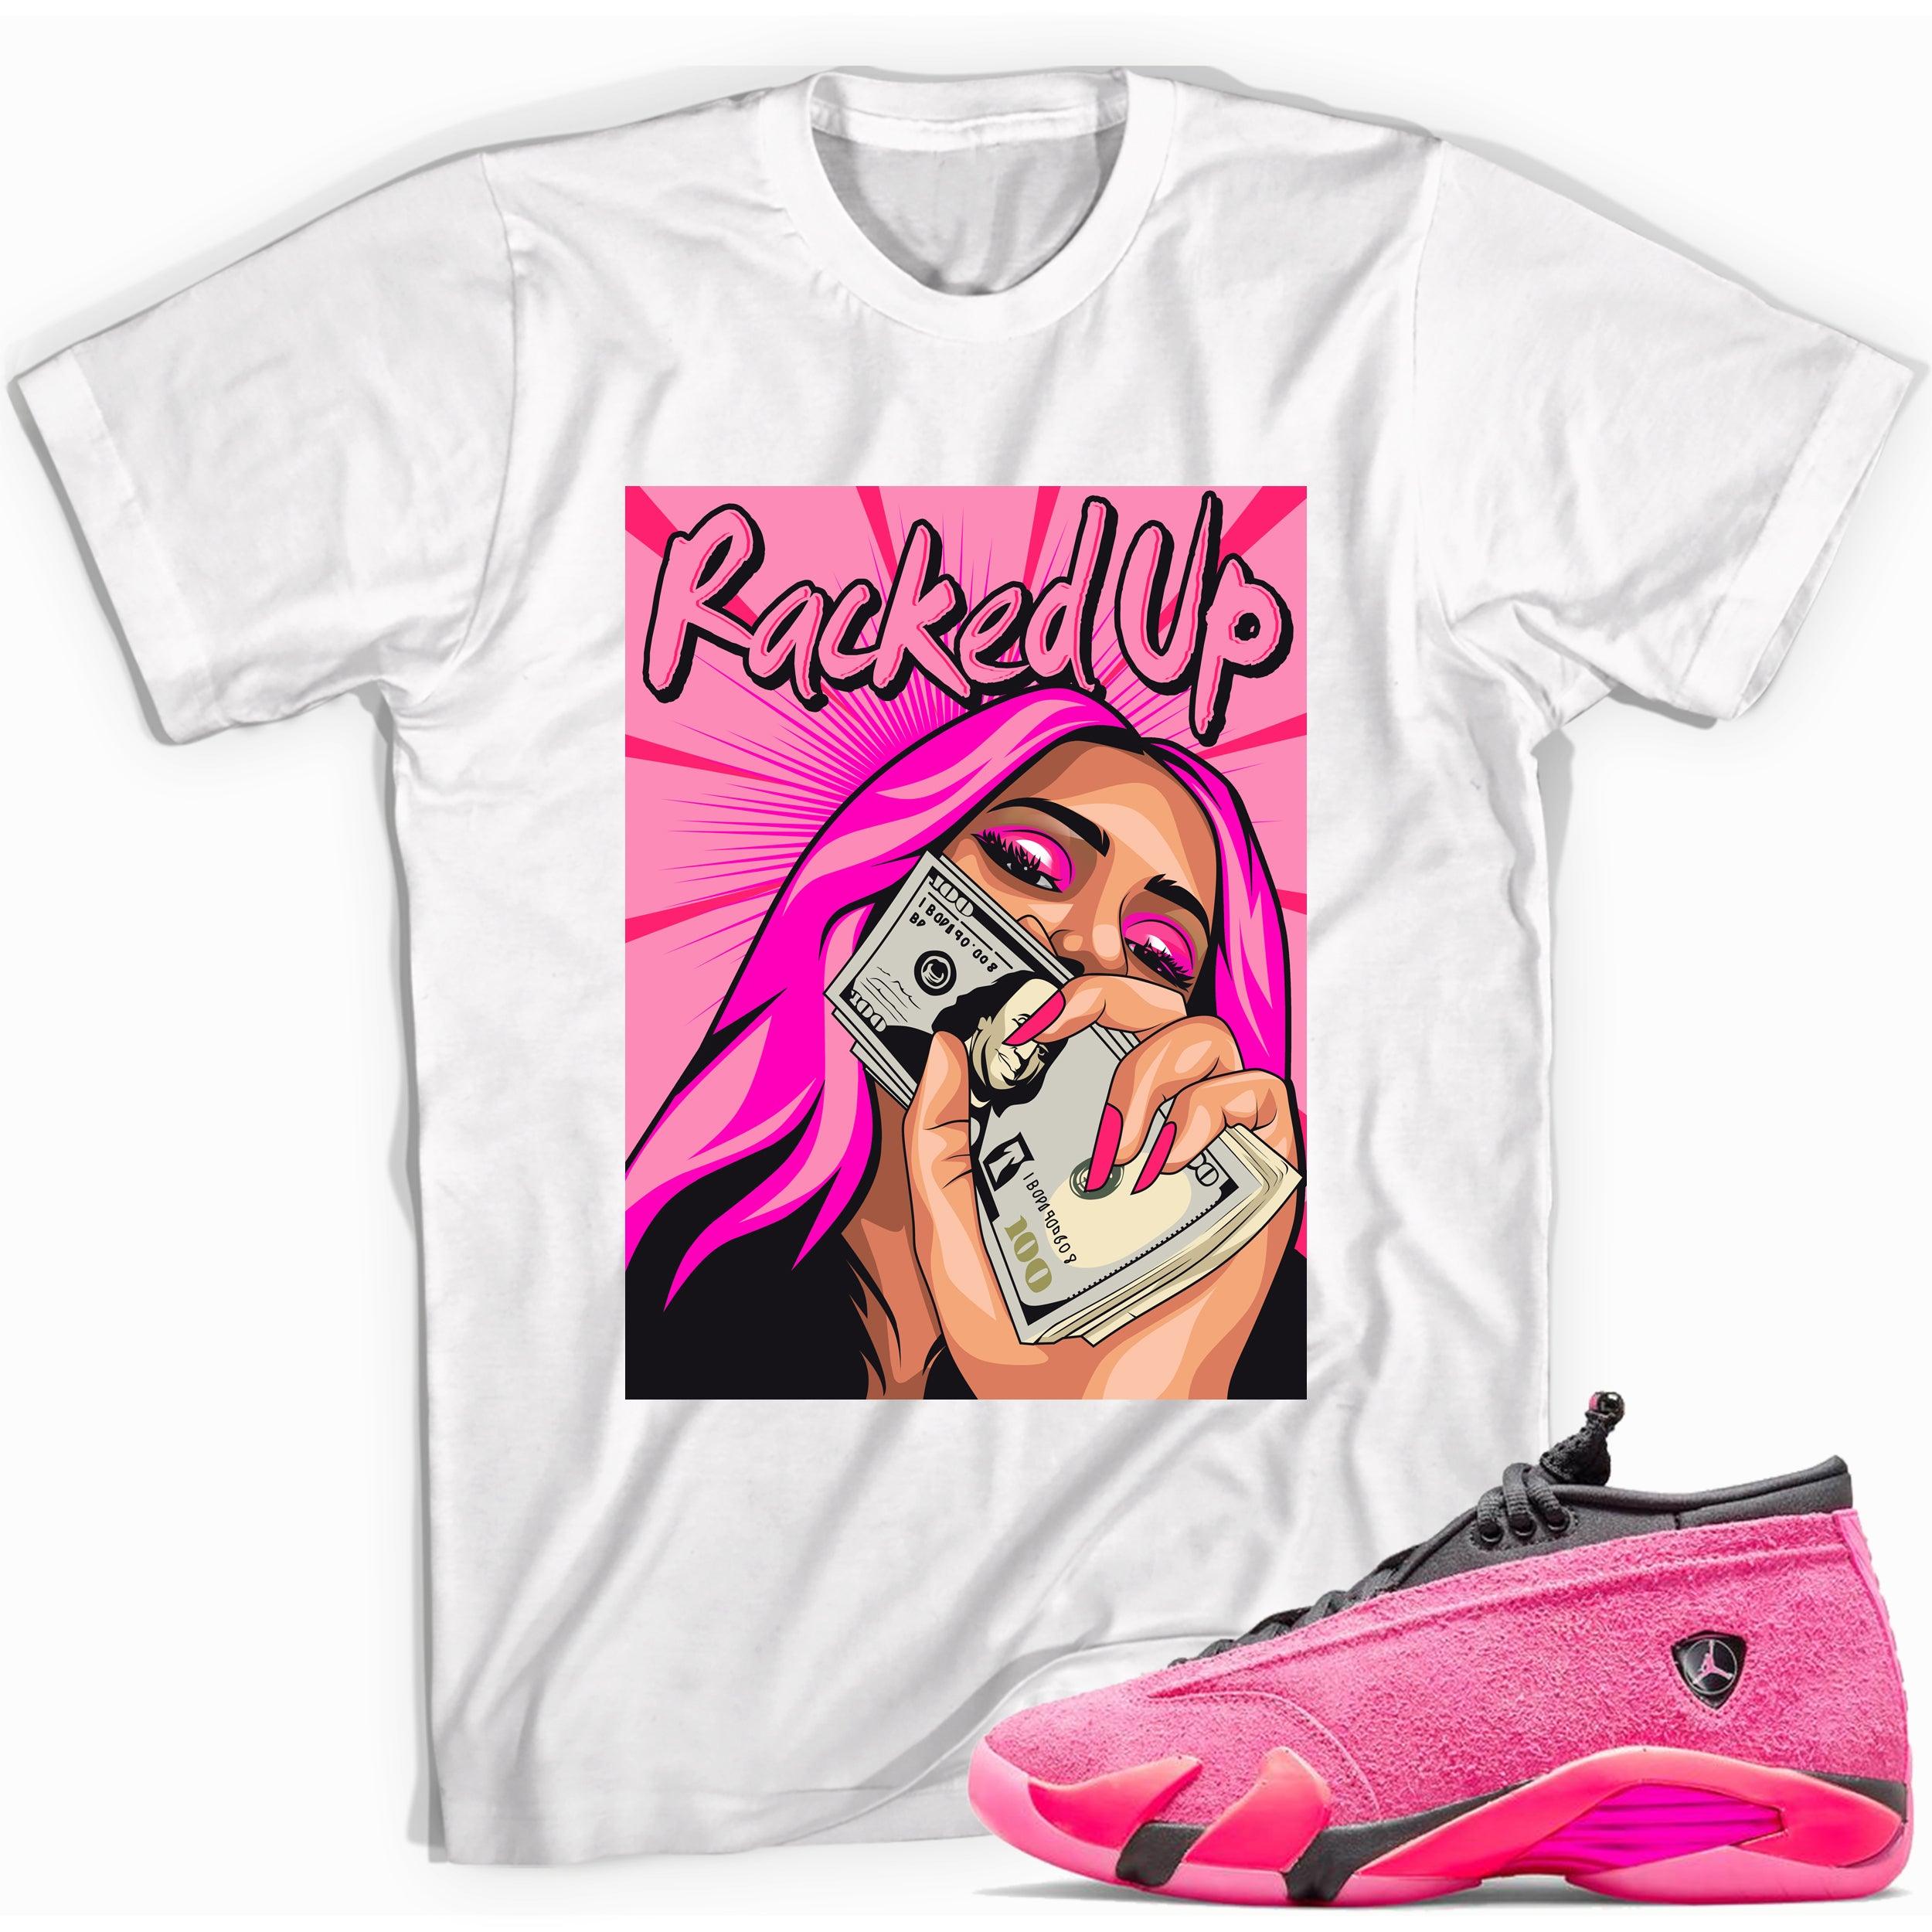 Racked Up Shirt AJ 14s Low Shocking Pink photo